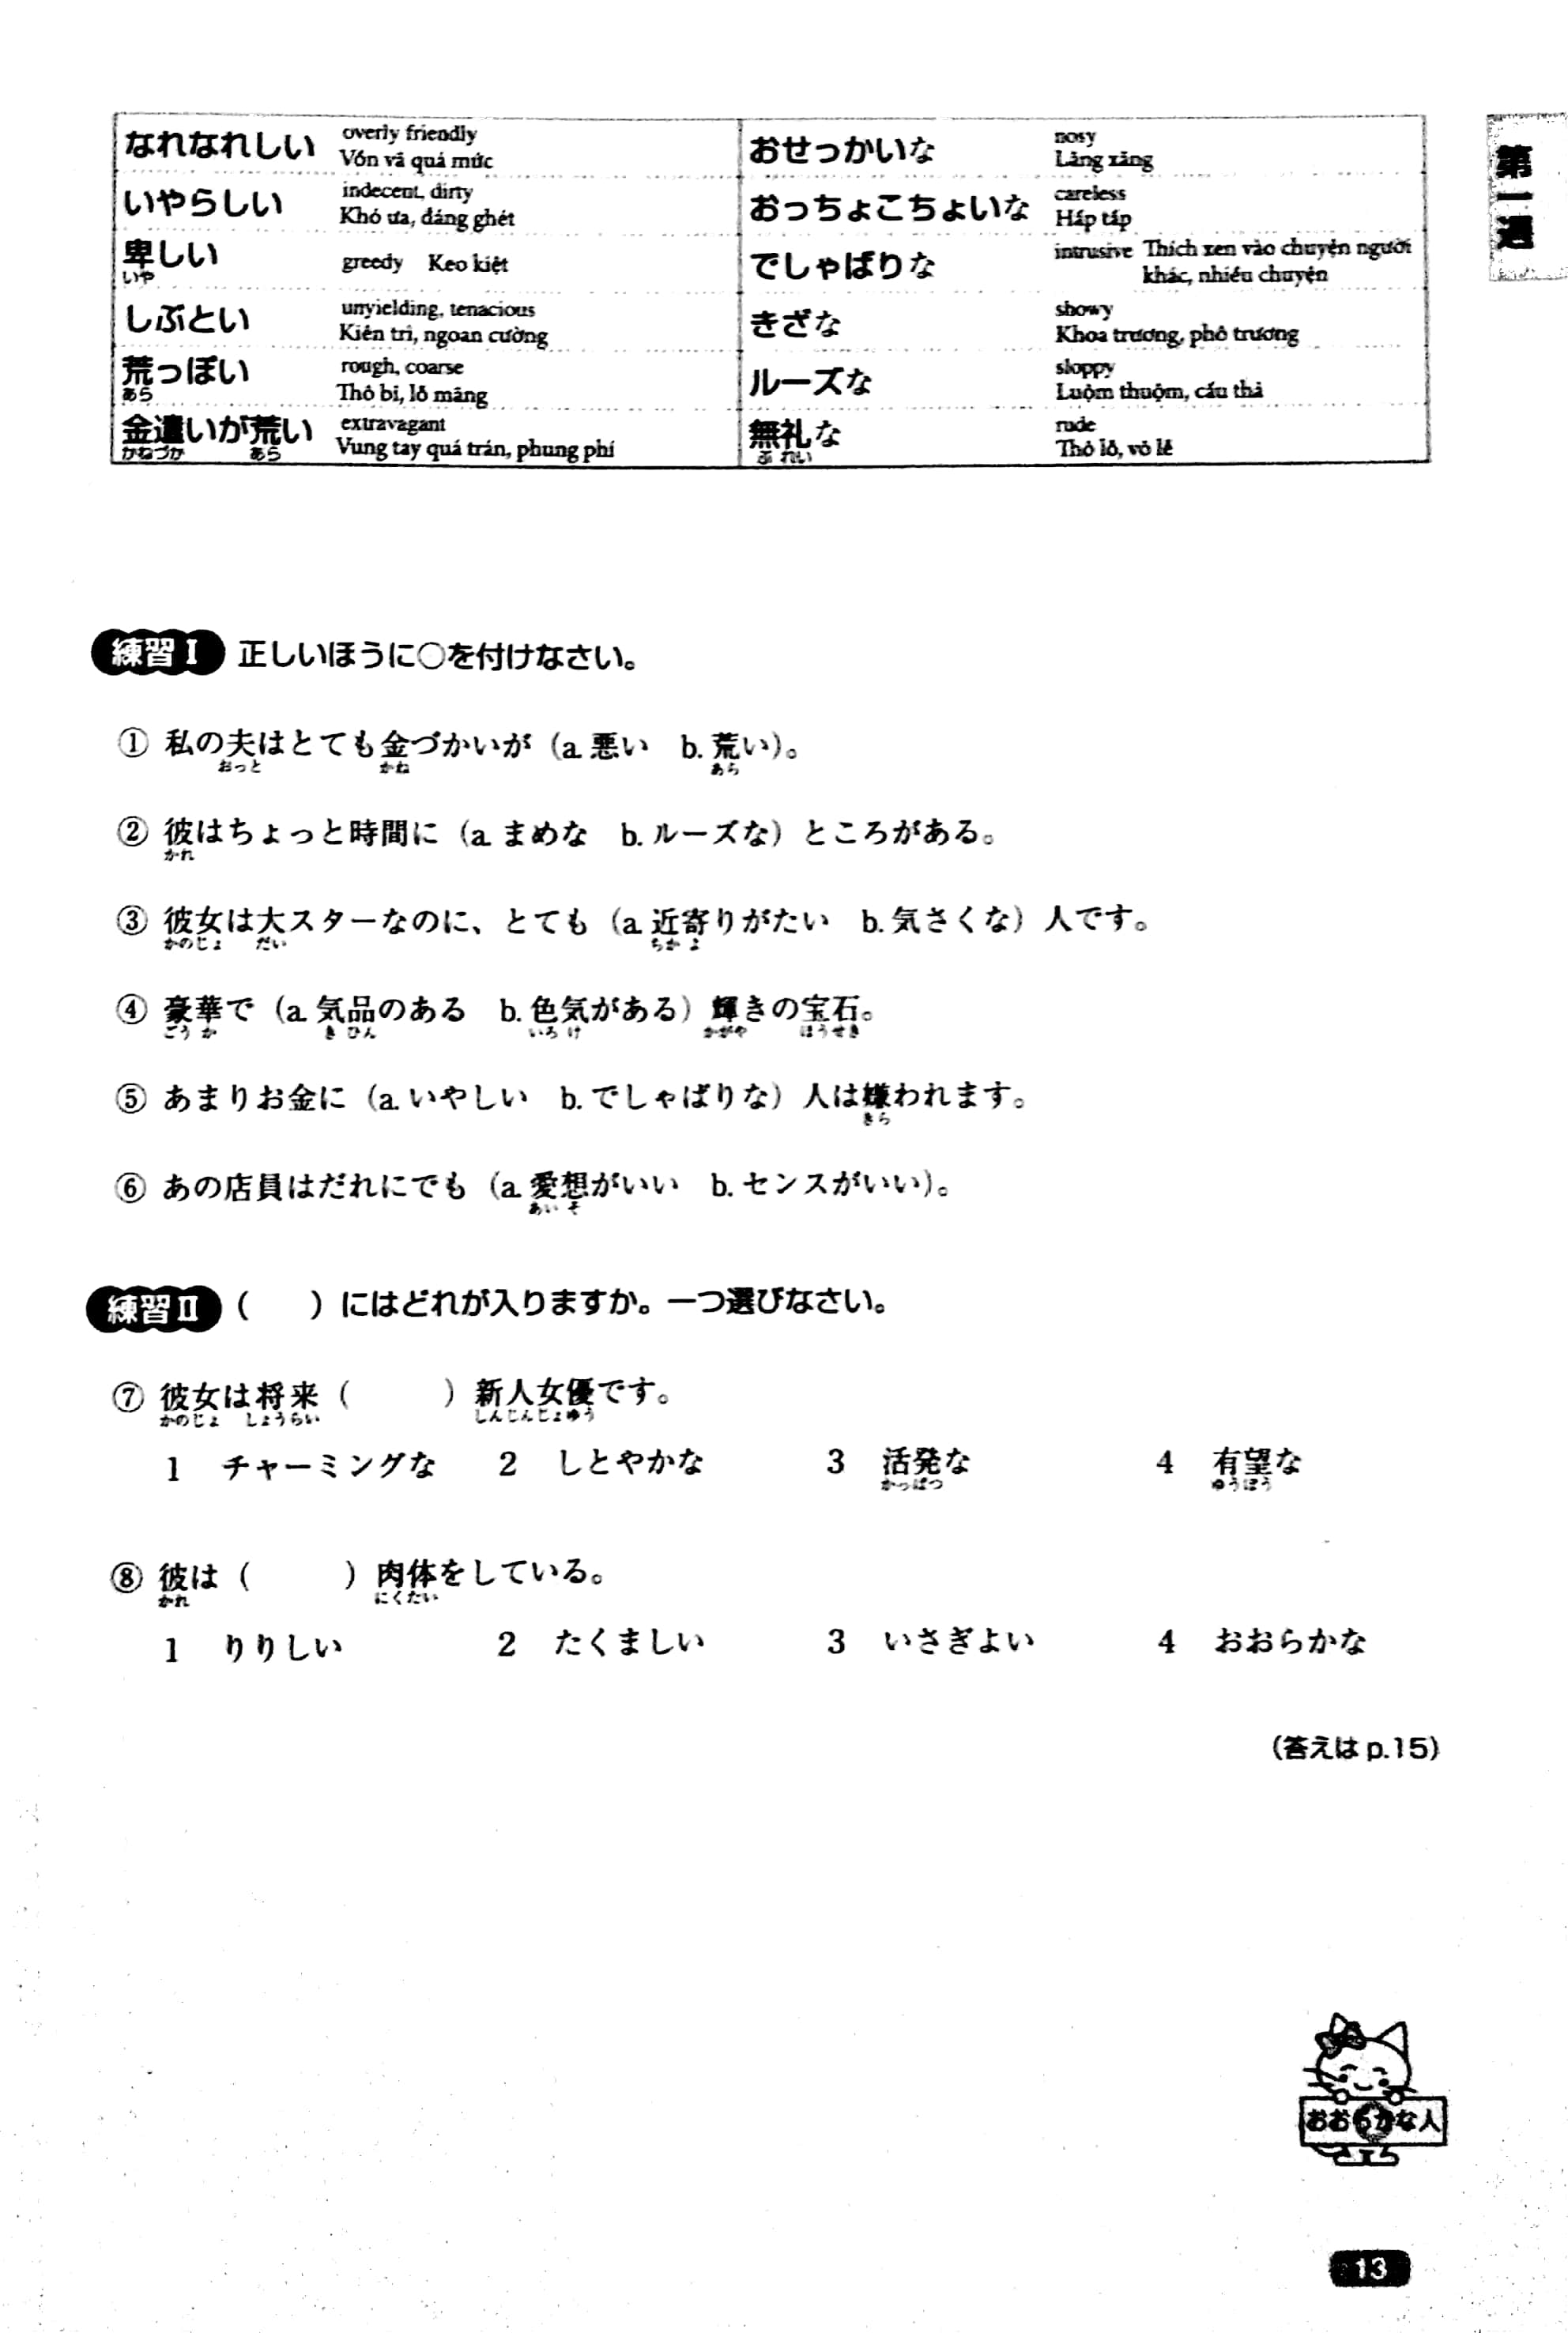 Luyện Thi Năng Lực Nhật Ngữ N1 – Từ Vựng PDF